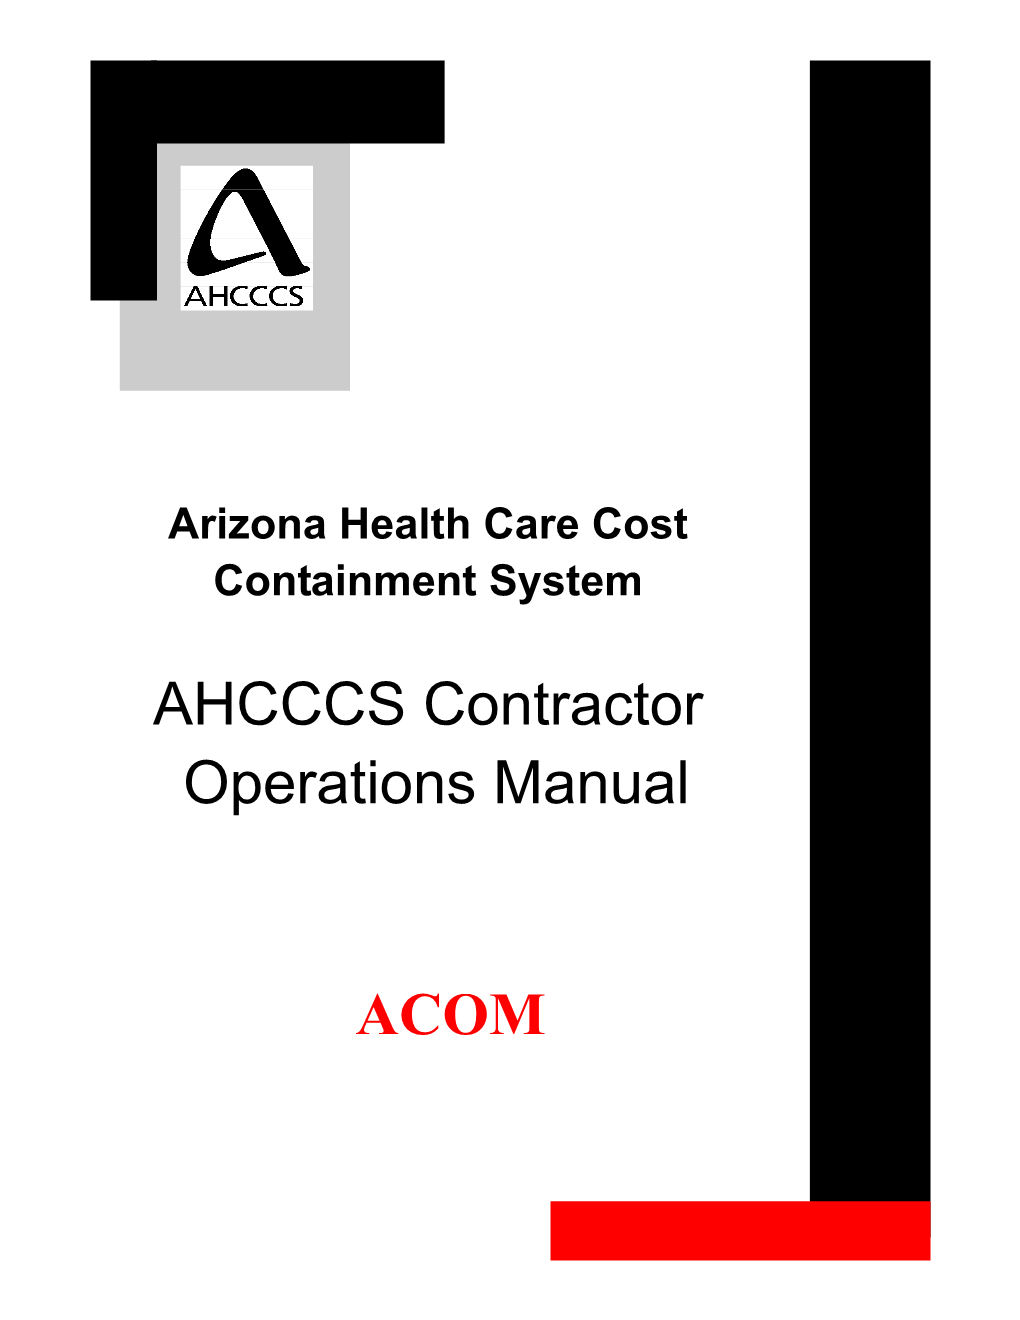 AHCCCS Contractor Operations Manual